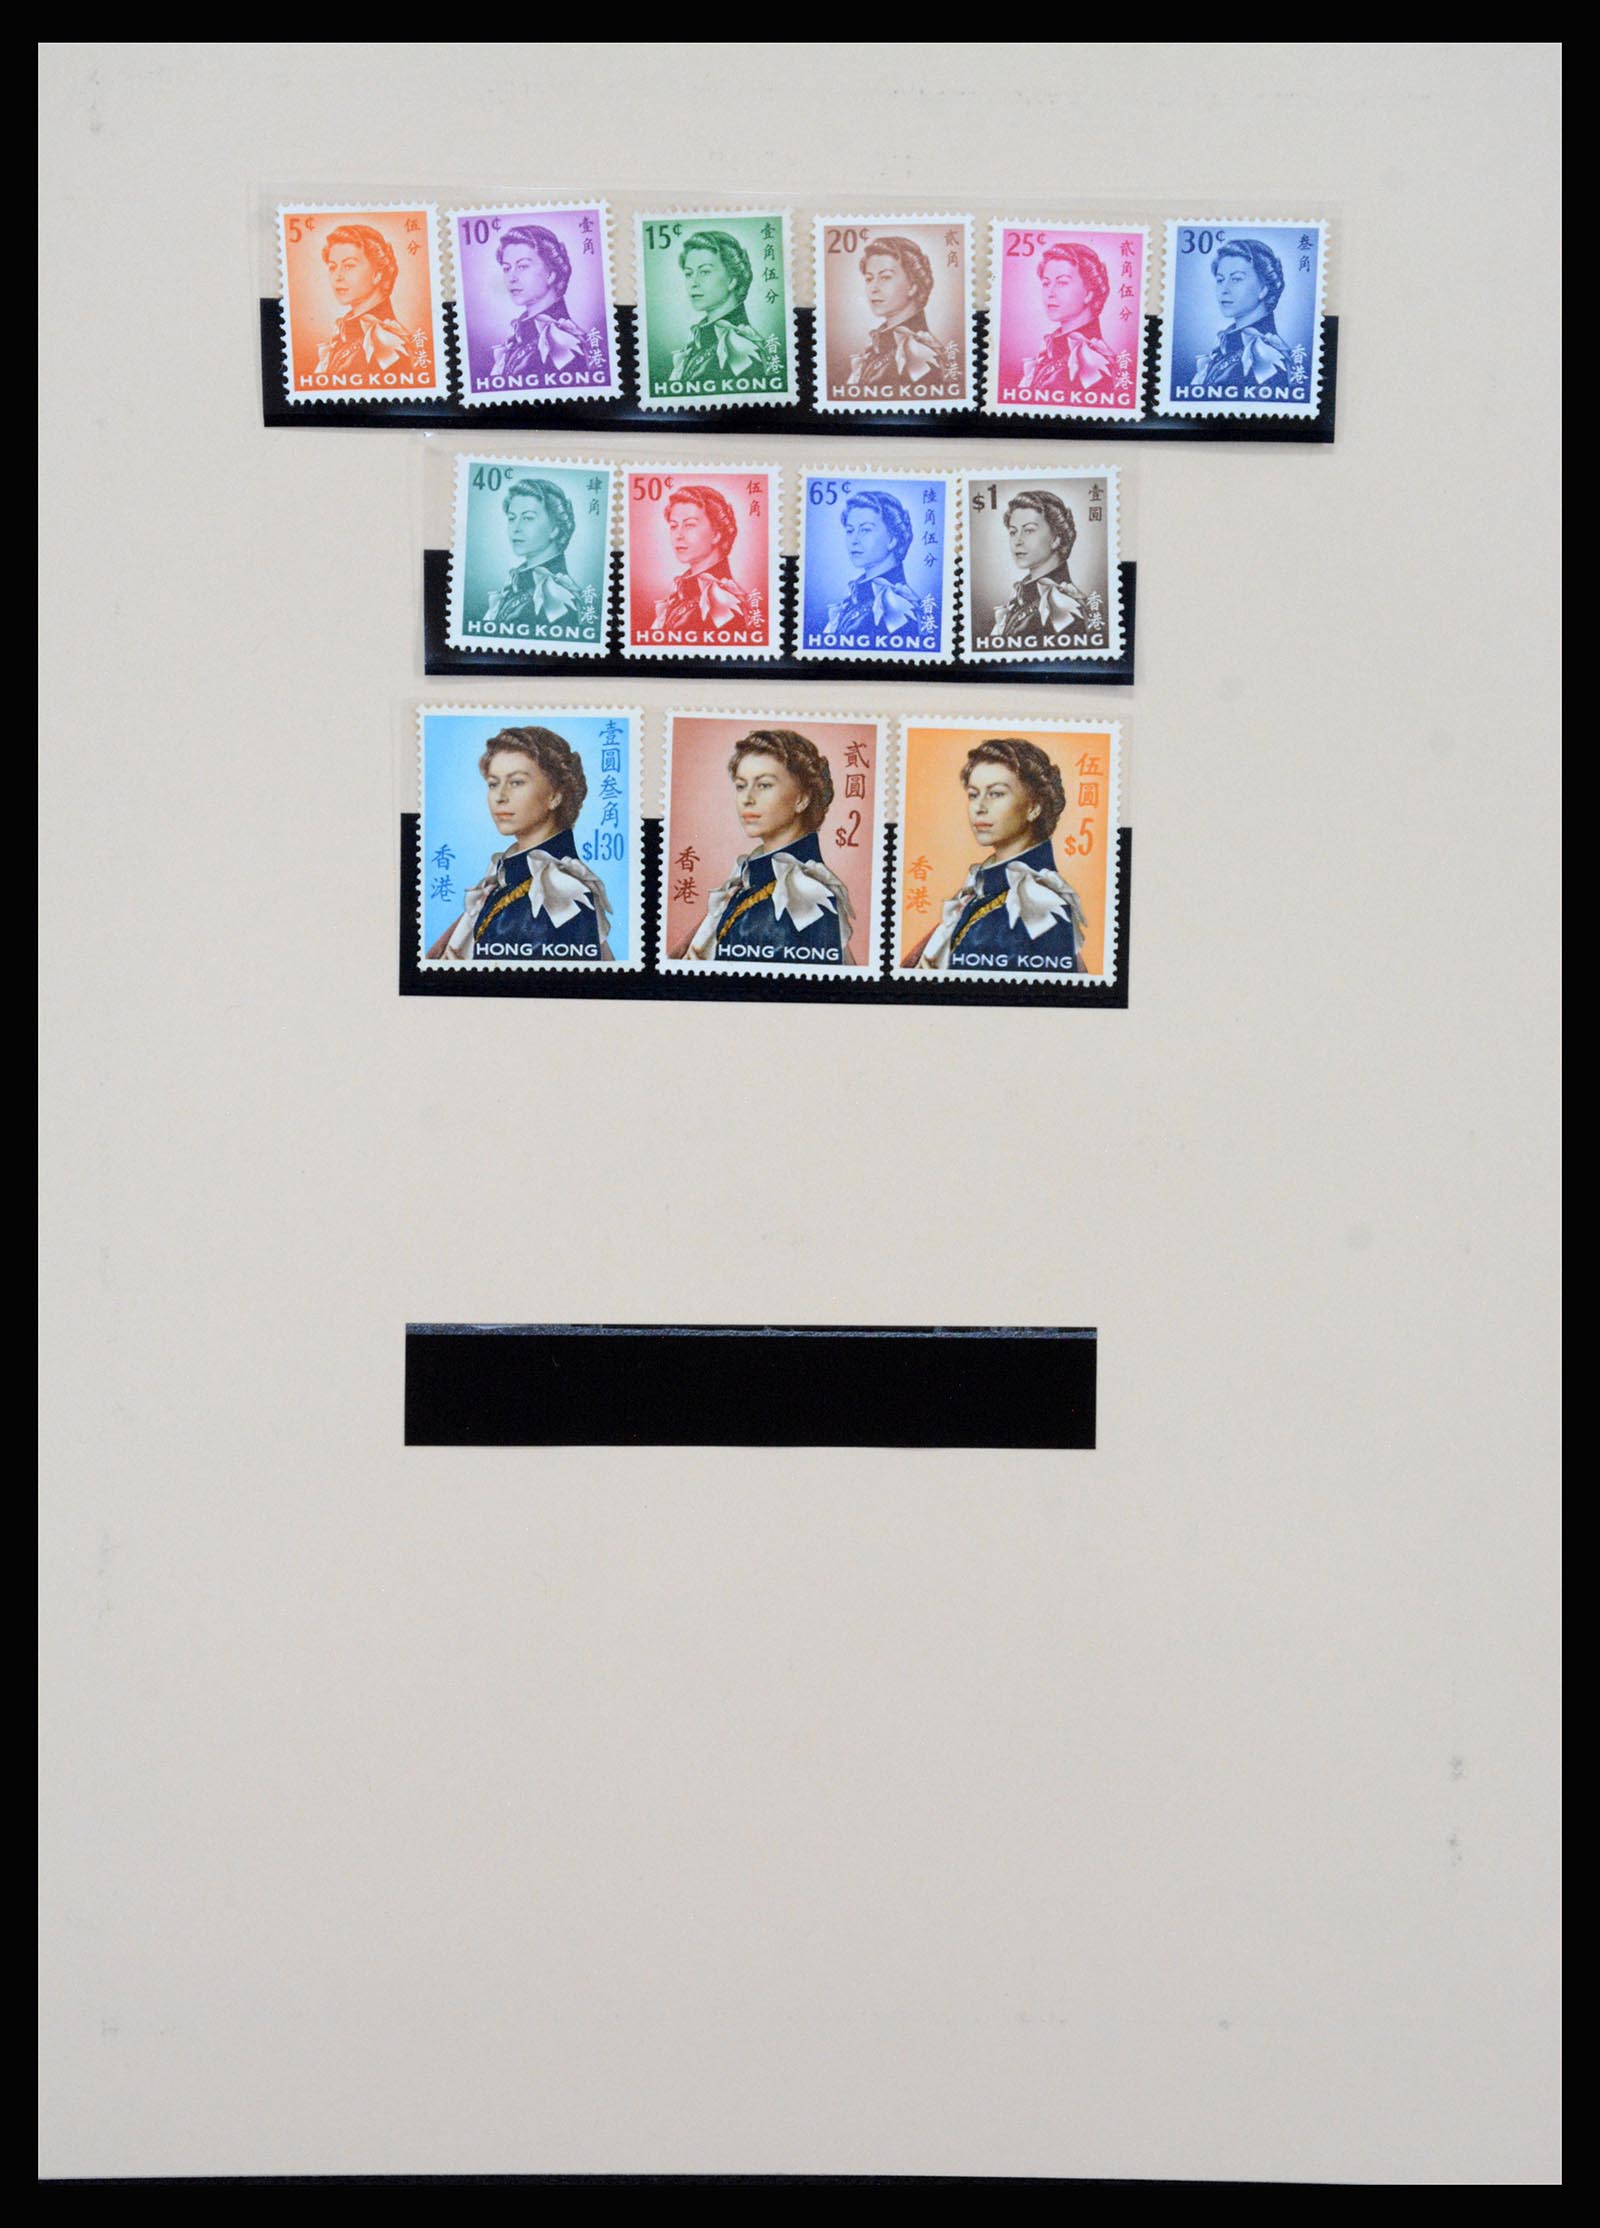 37210 015 - Stamp collection 37210 Hong Kong 1862-2000.